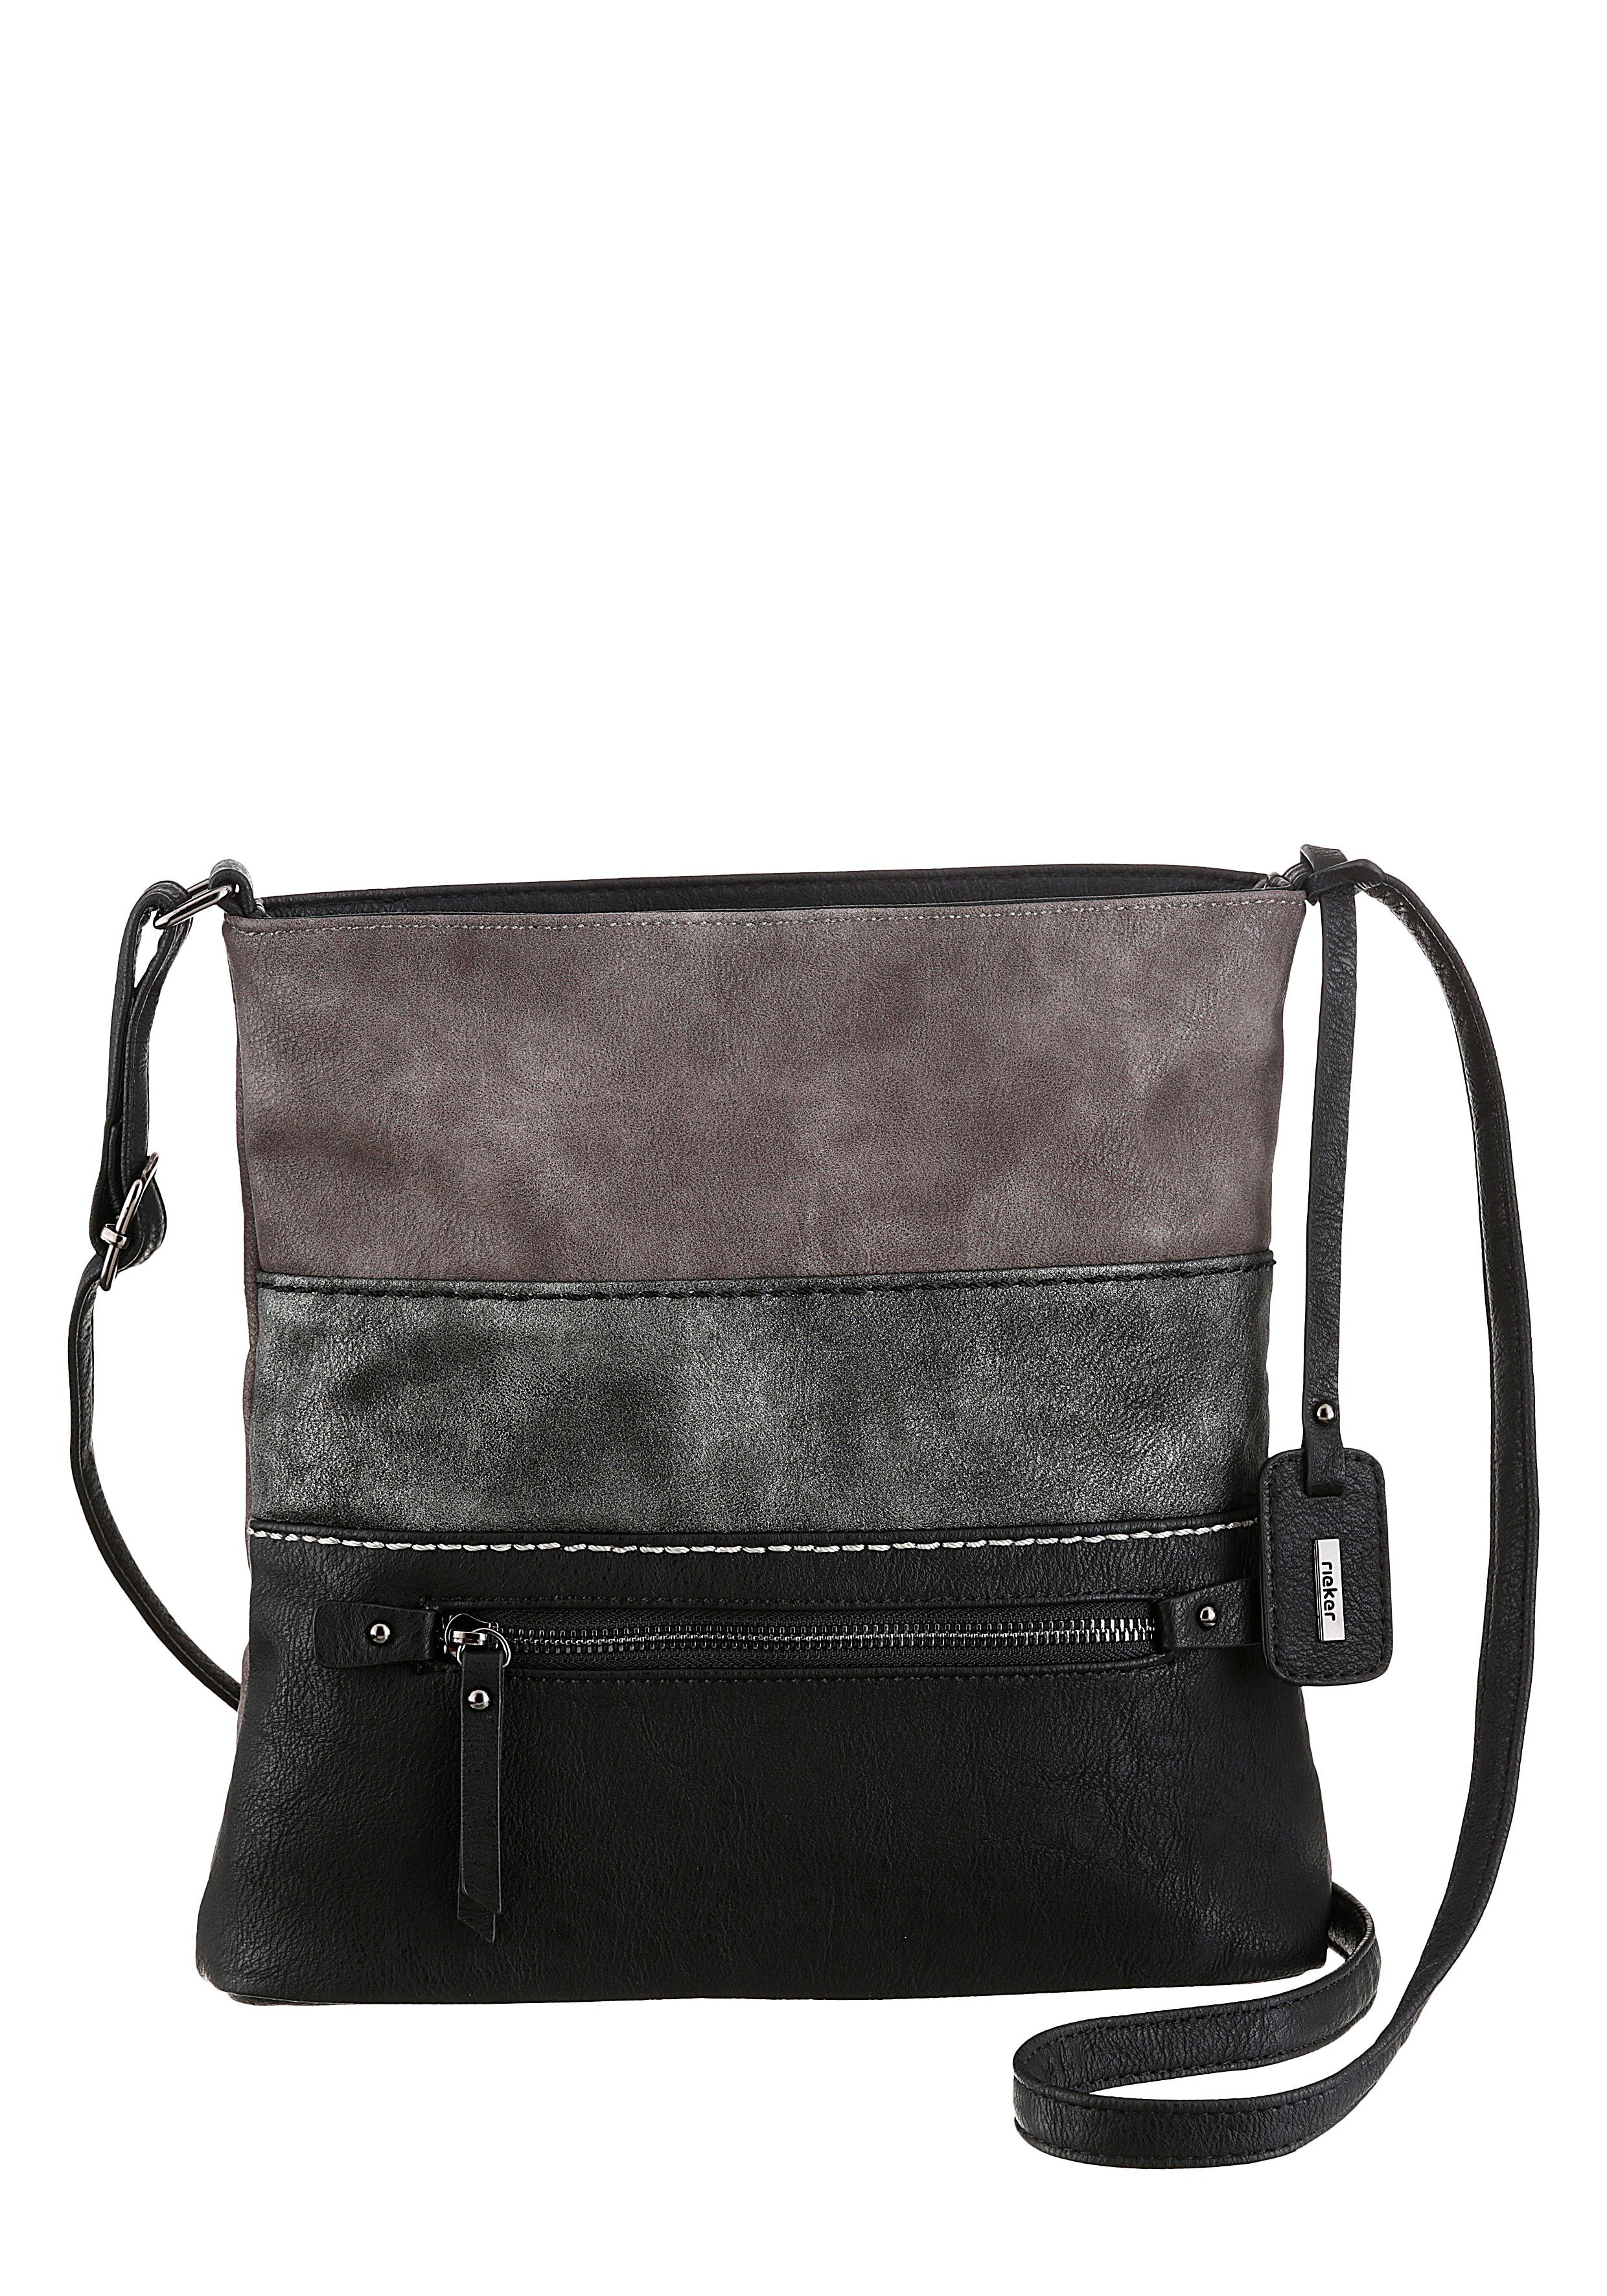 Rieker Umhängetasche guana/guana/guana, in schicker Farbkombi schwarz-grau-altsilberfarben | Handtaschen